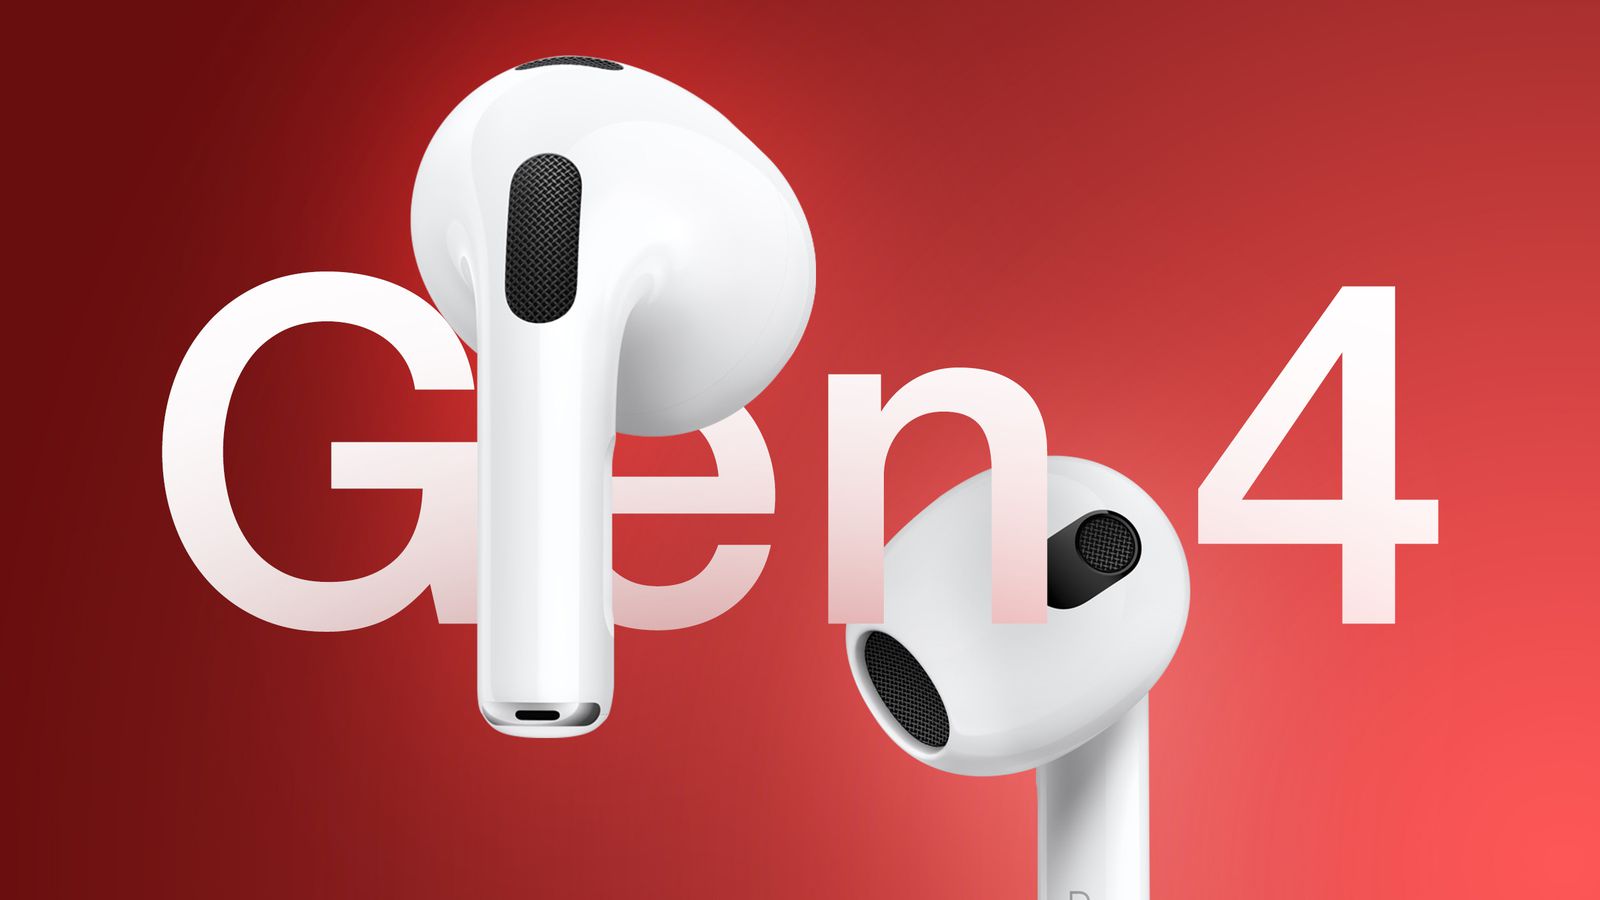 من iPhoneIslam.com، سماعتا أذن لاسلكيتان تحملان اسم "AirPods 4" تطفوان على خلفية حمراء، وتعرضان تصميمهما وموضع مكونات الميكروفون ومكبر الصوت.